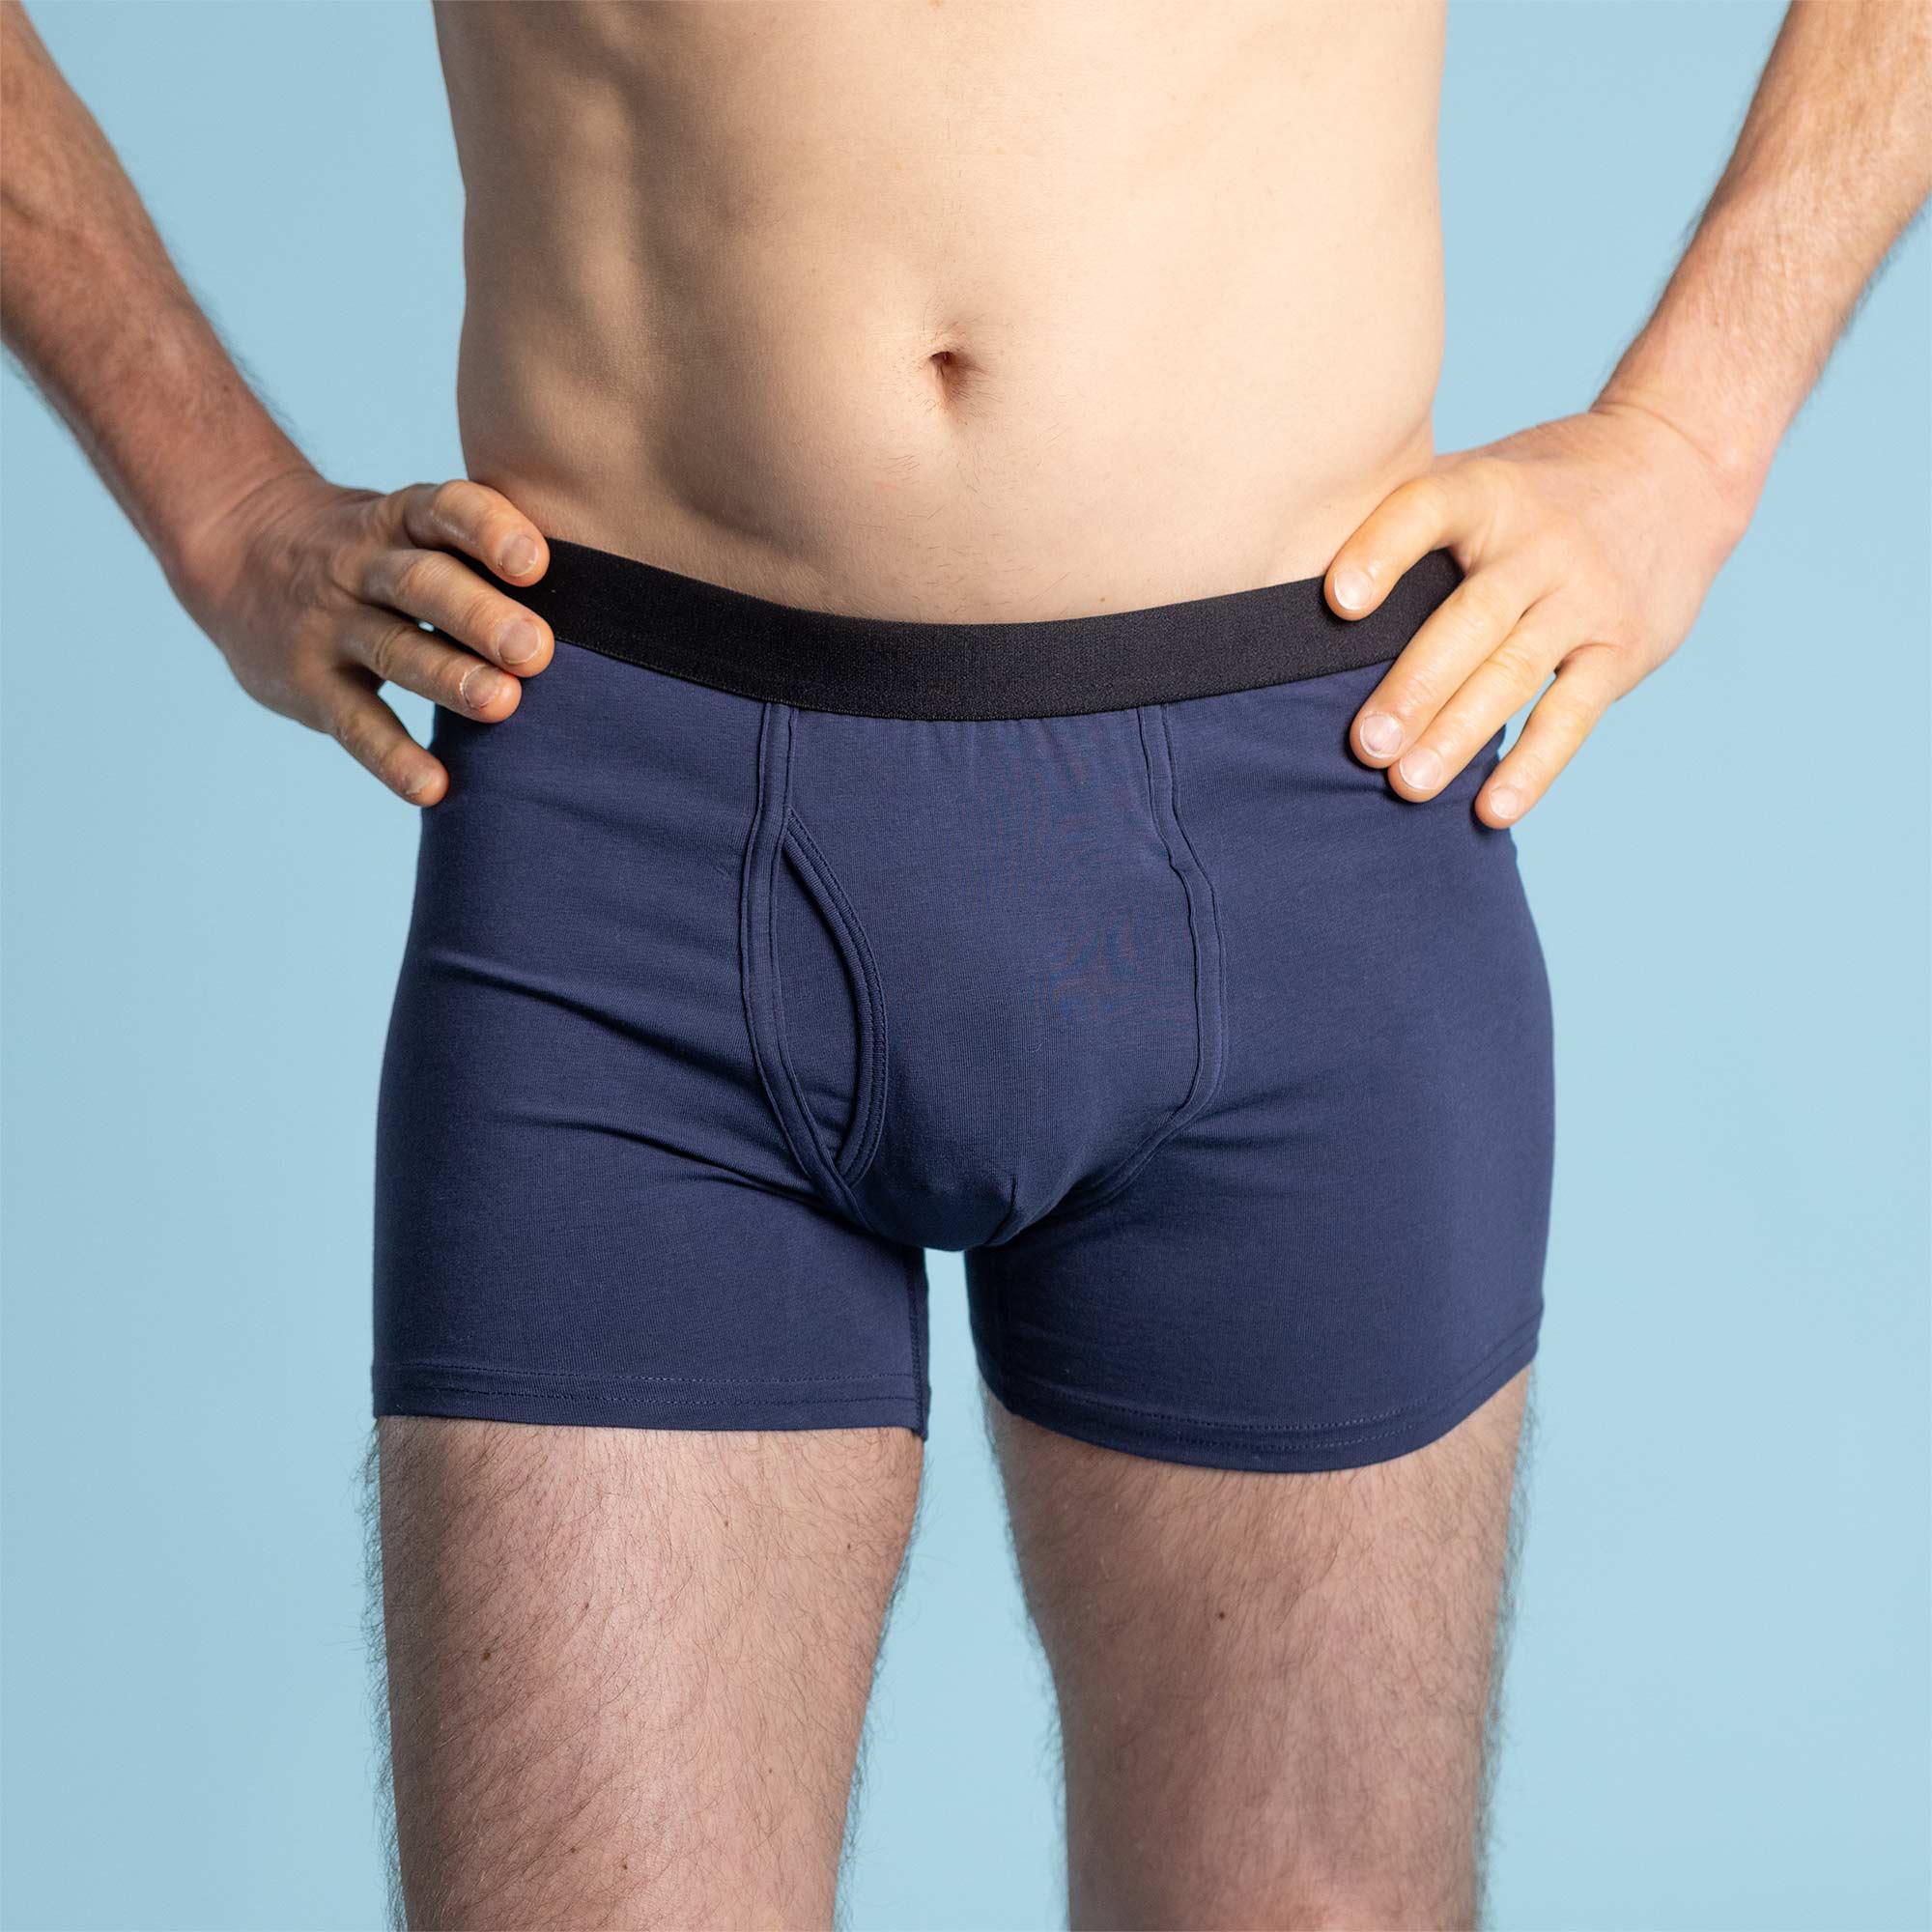 Classic White Men's Briefs. Cotton Handmade Underpants. Plus Size Man Briefs.  -  Israel